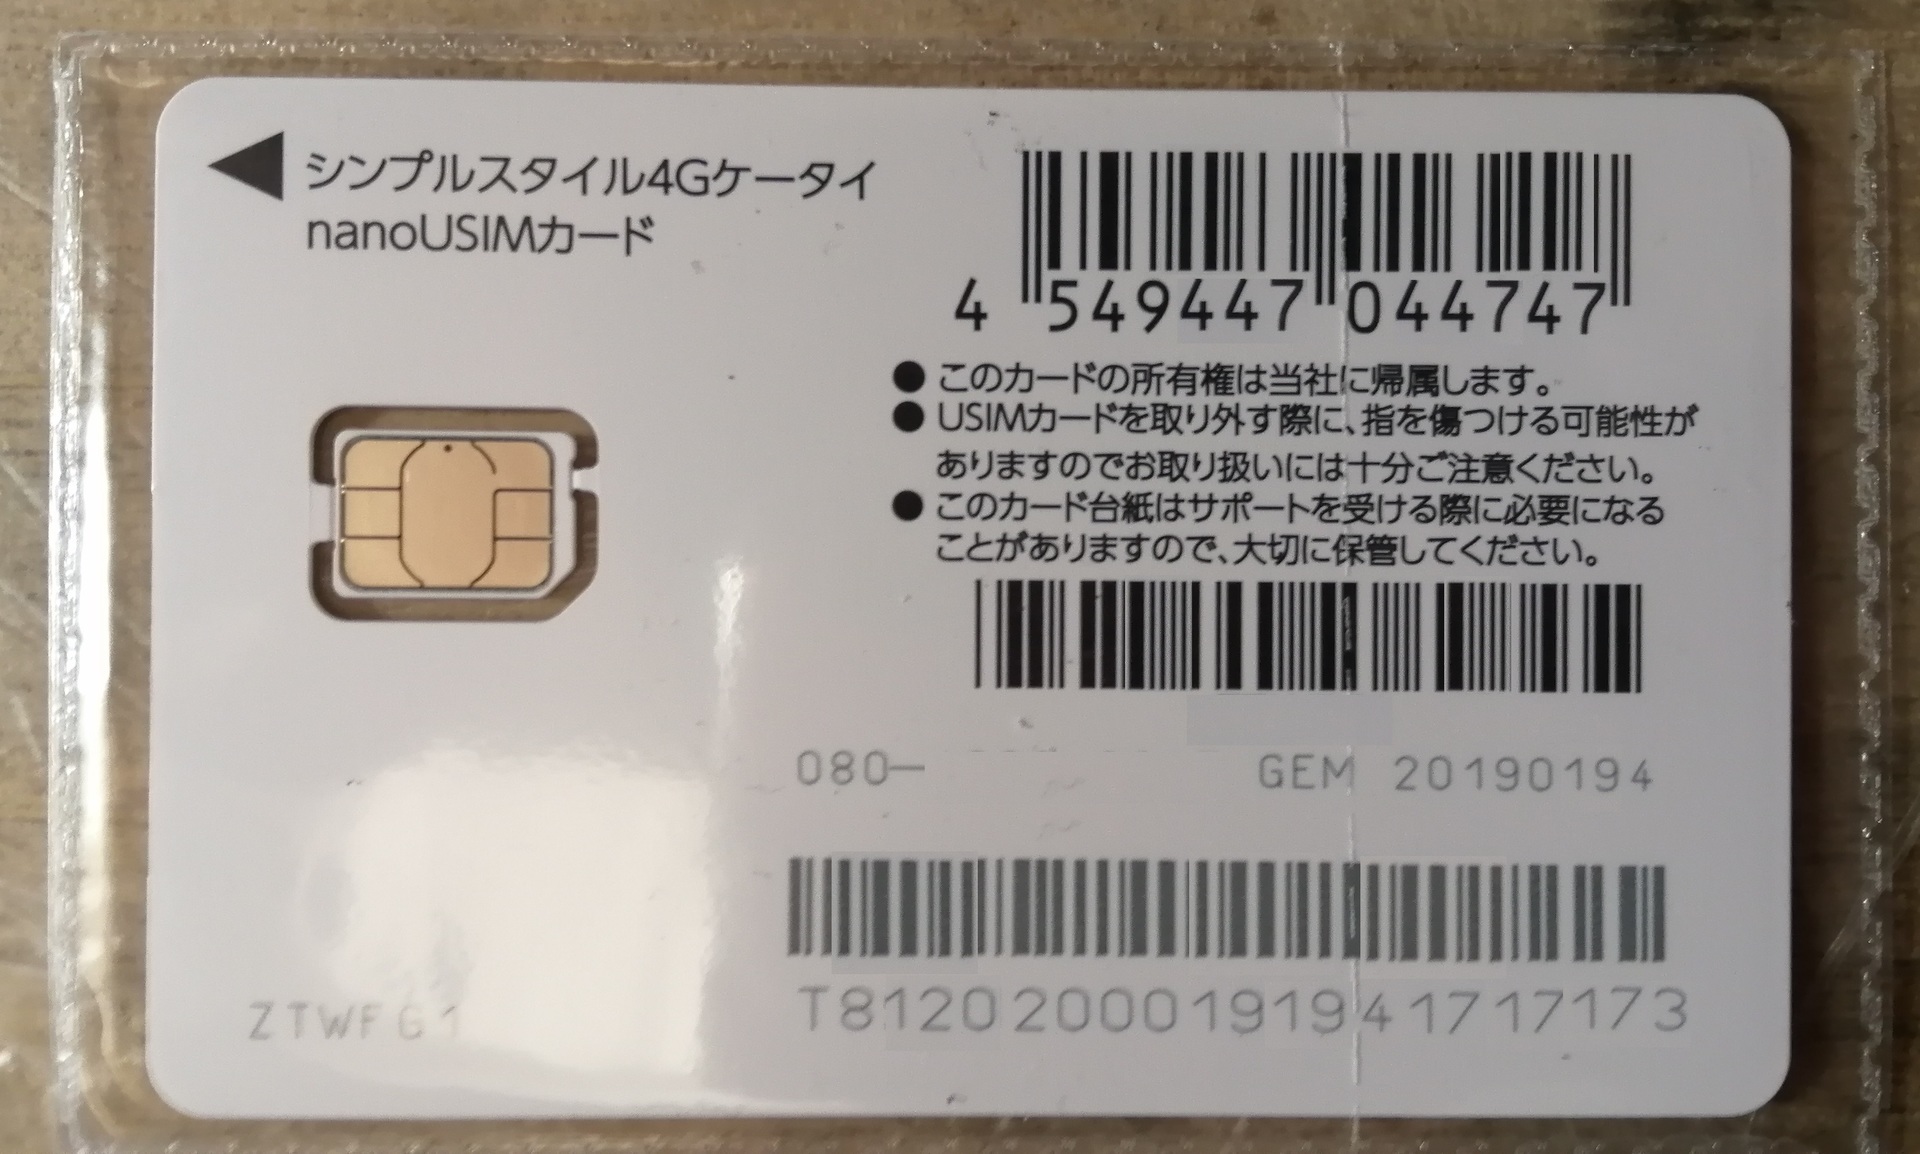 SoftBankのプリペイド携帯『シンプルスタイル』 月額基本料金0円が凄